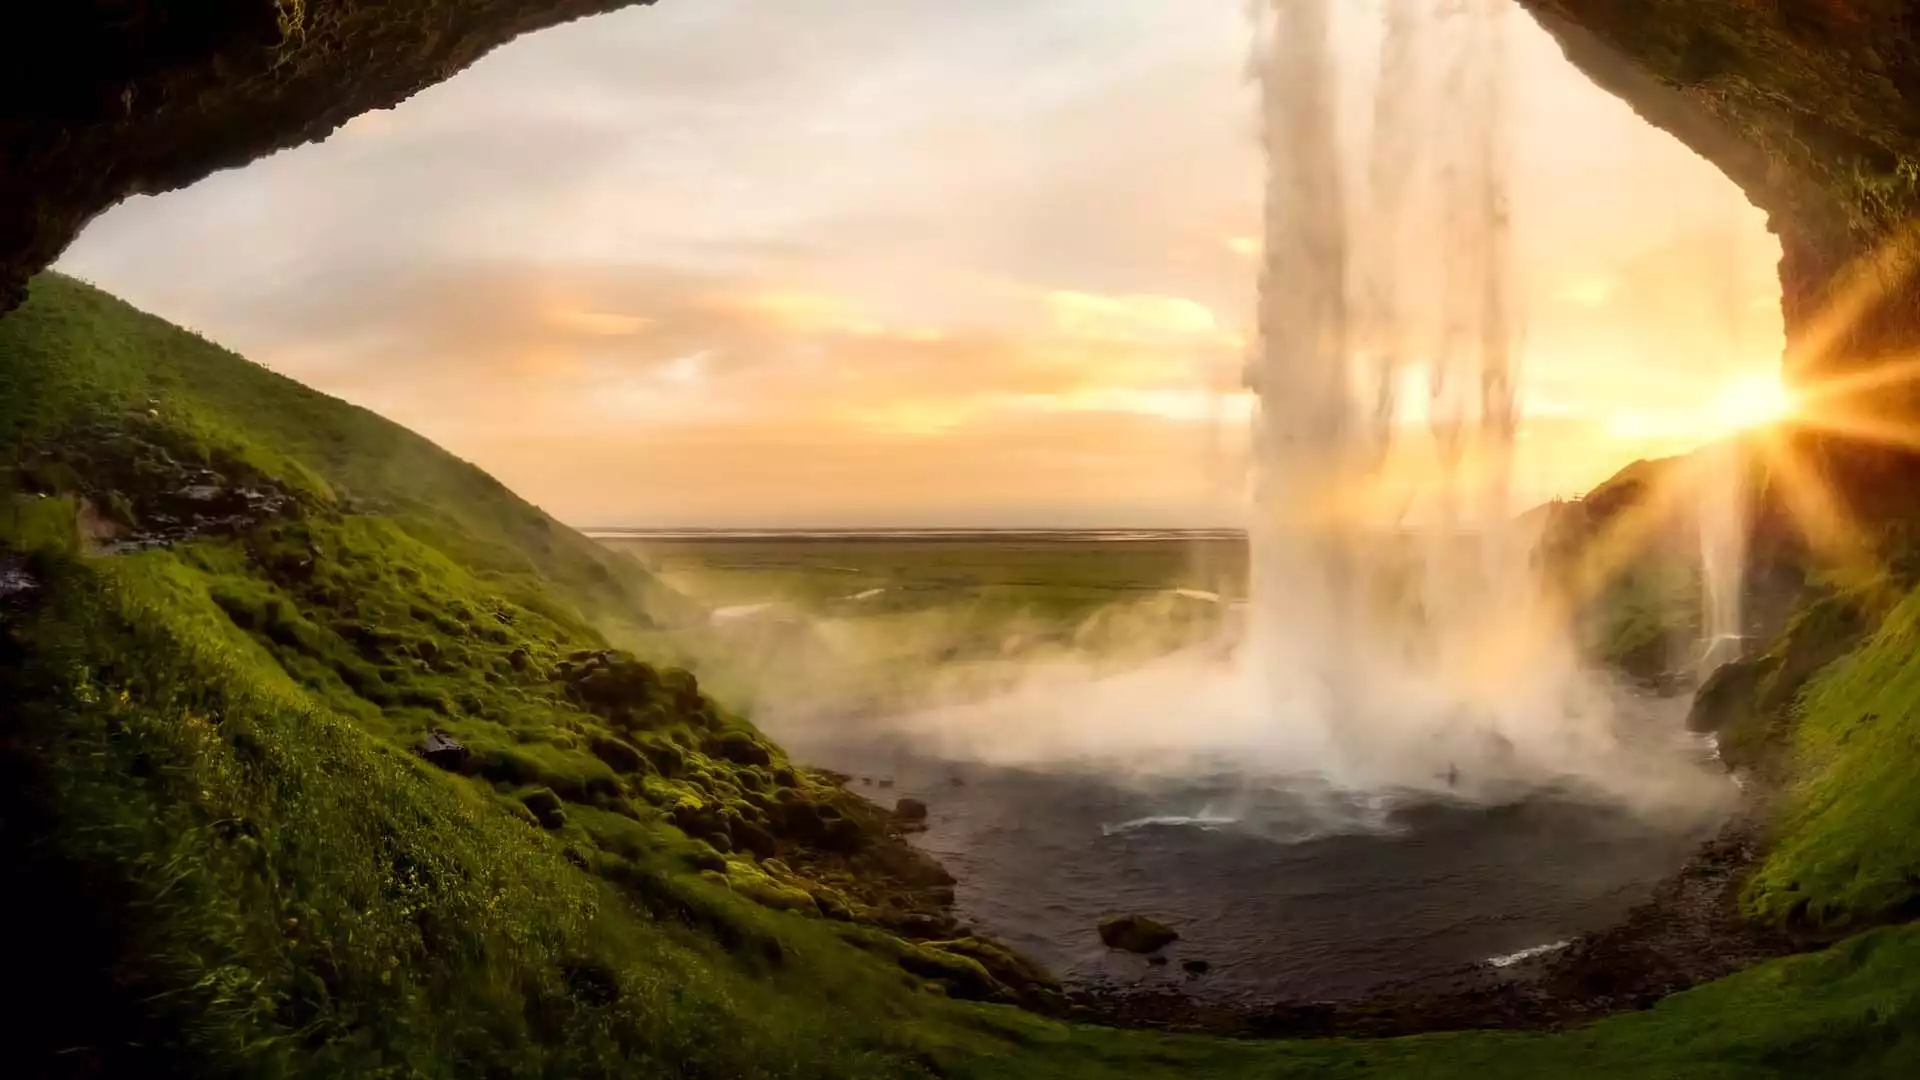 IJslandse watervallen